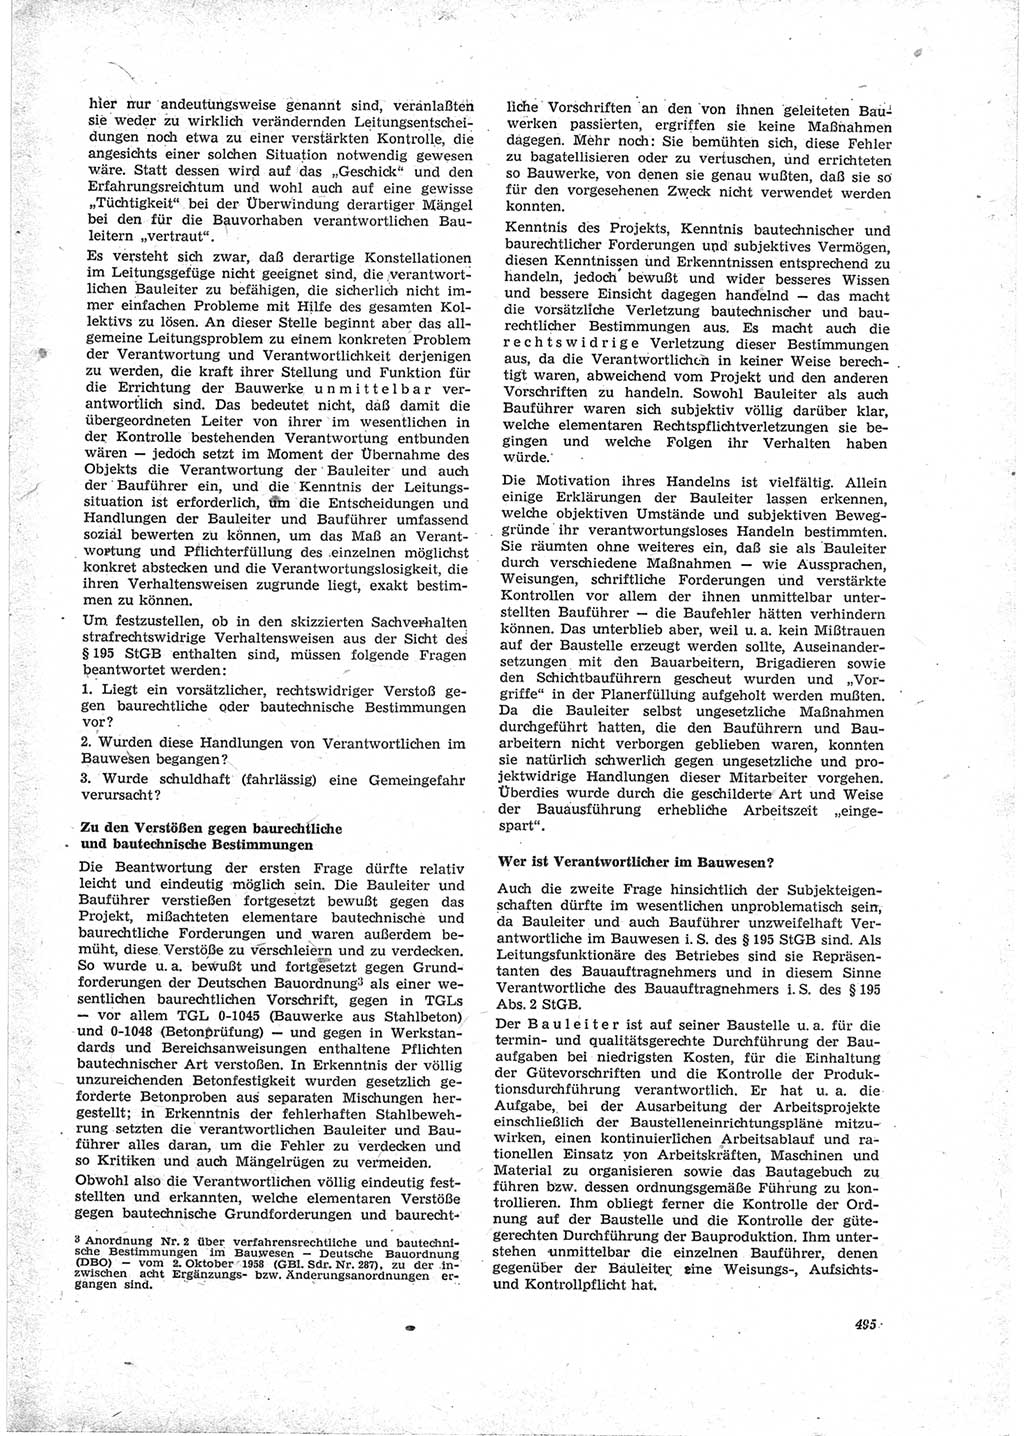 Neue Justiz (NJ), Zeitschrift für Recht und Rechtswissenschaft [Deutsche Demokratische Republik (DDR)], 23. Jahrgang 1969, Seite 495 (NJ DDR 1969, S. 495)